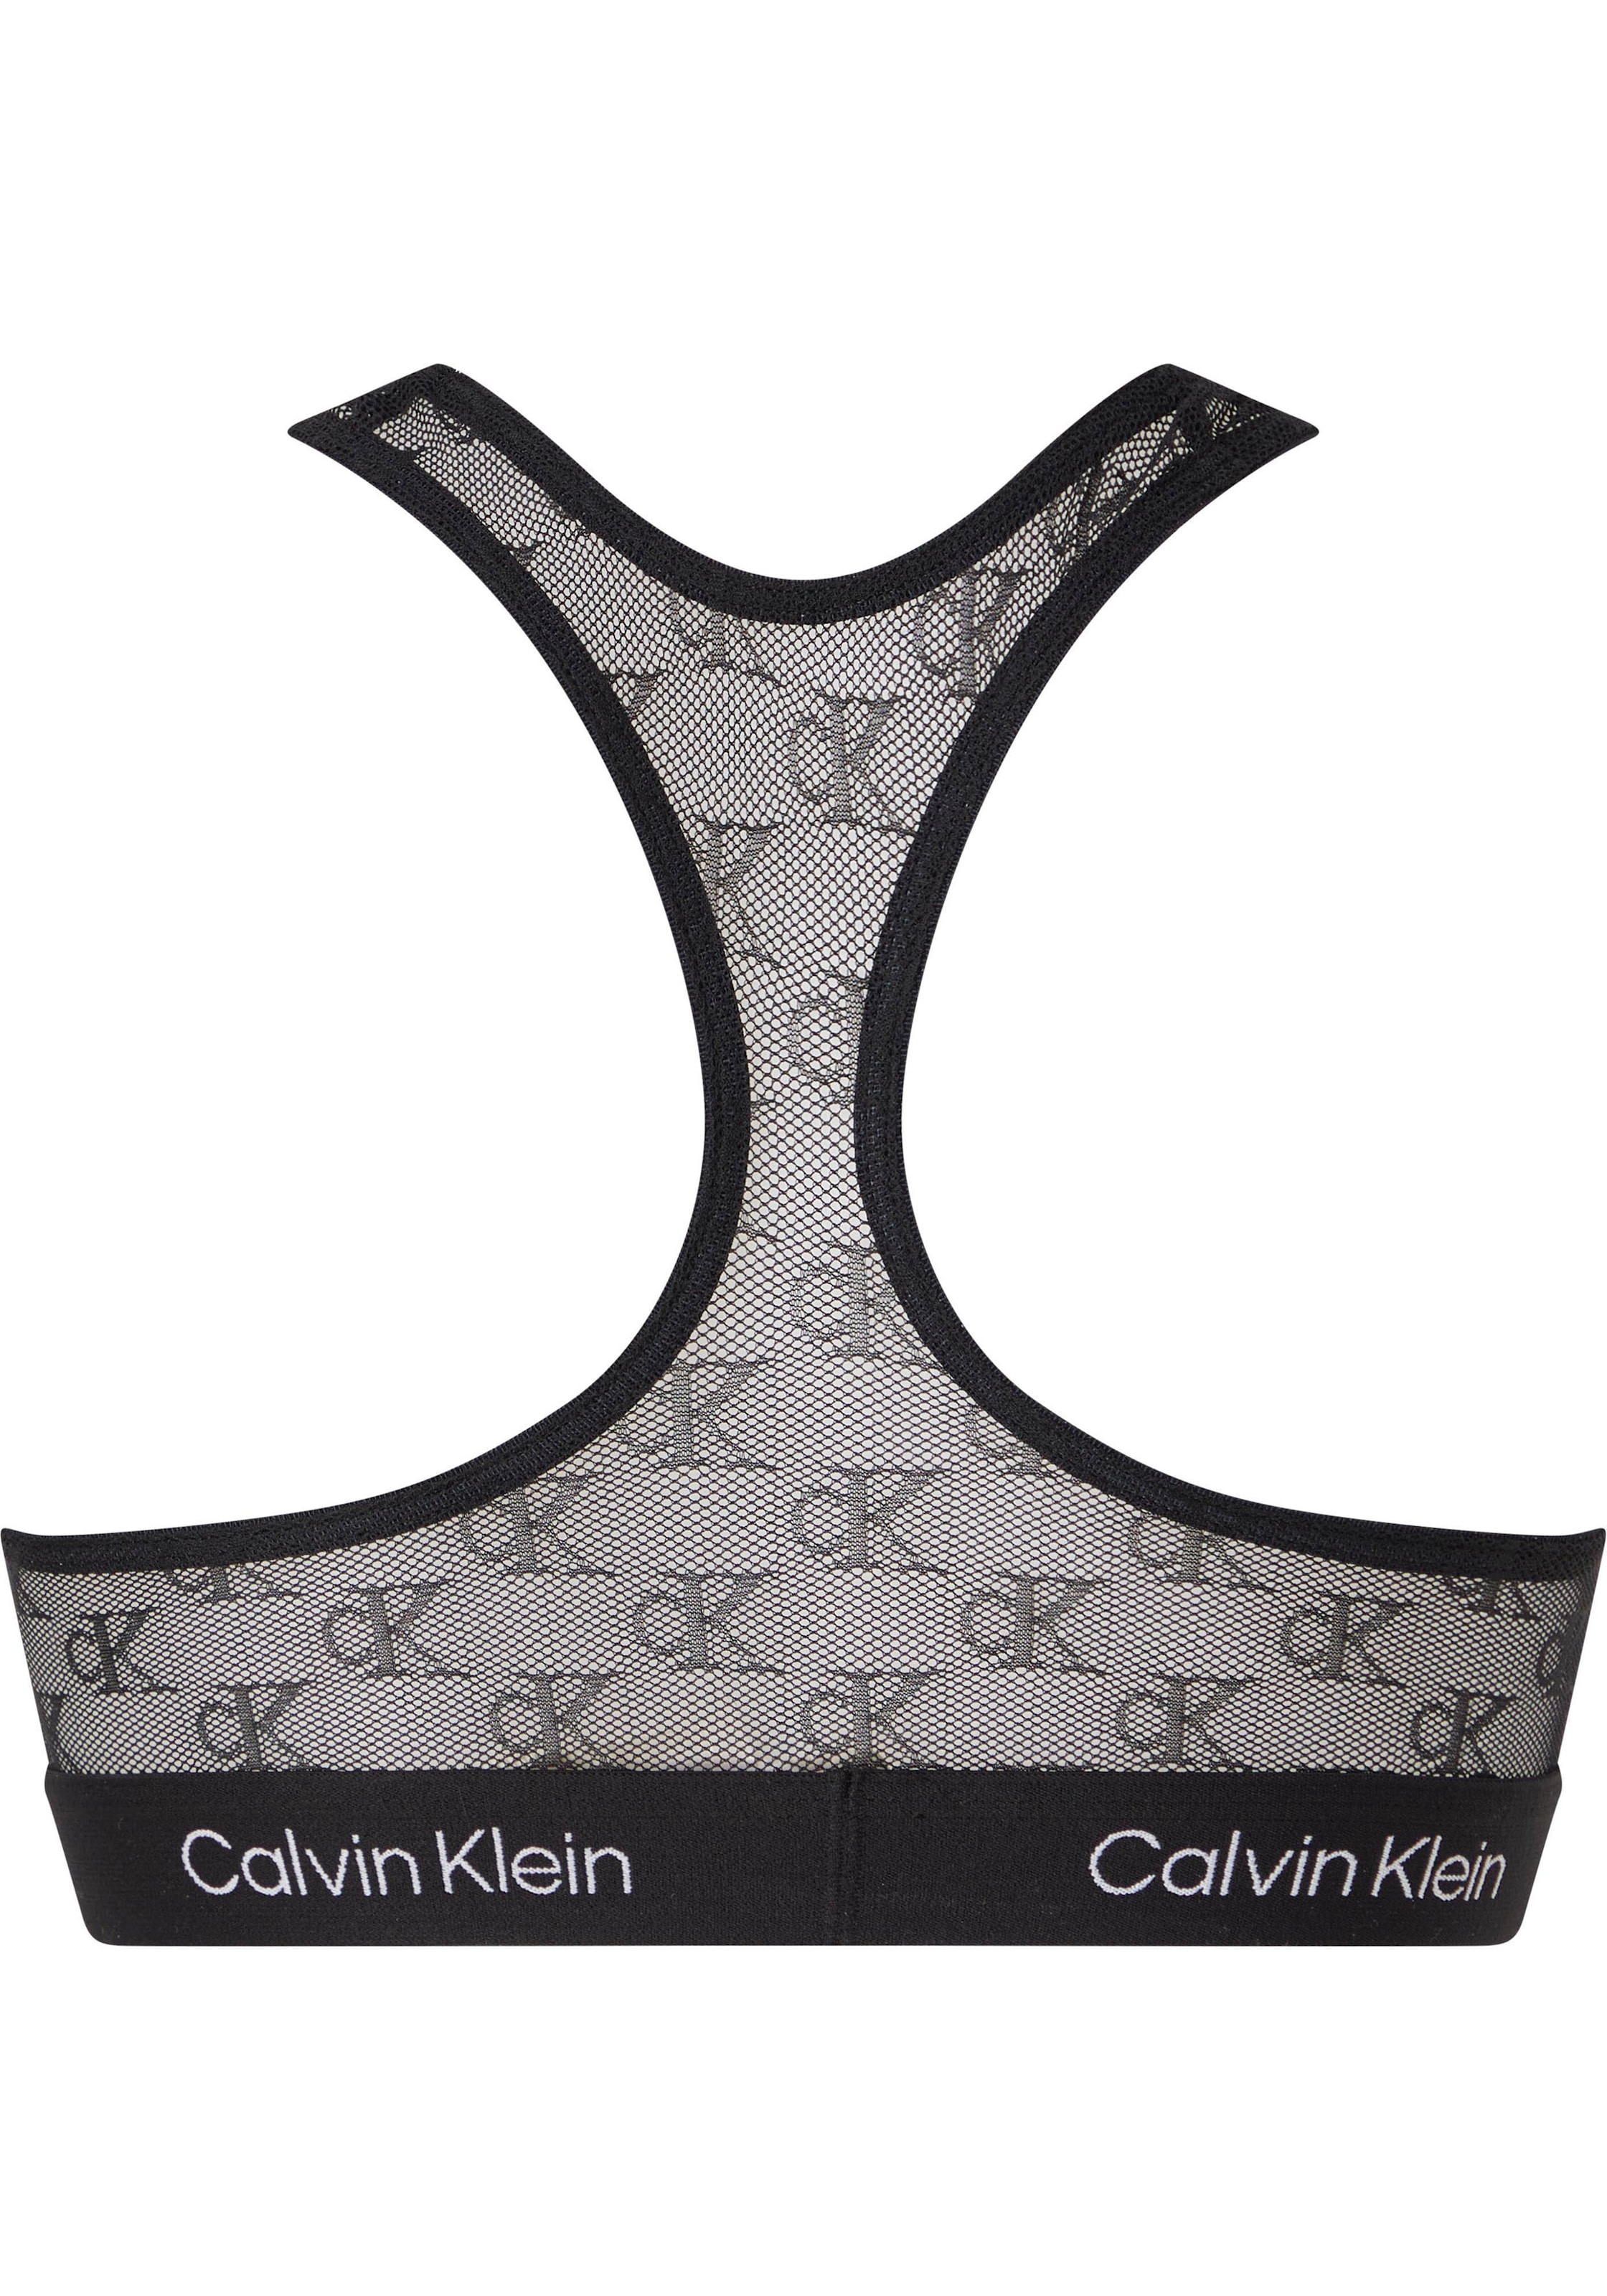 Calvin Klein Underwear Bralette-BH »UNLINED BRALETTE«, mit CK-Monogrammen